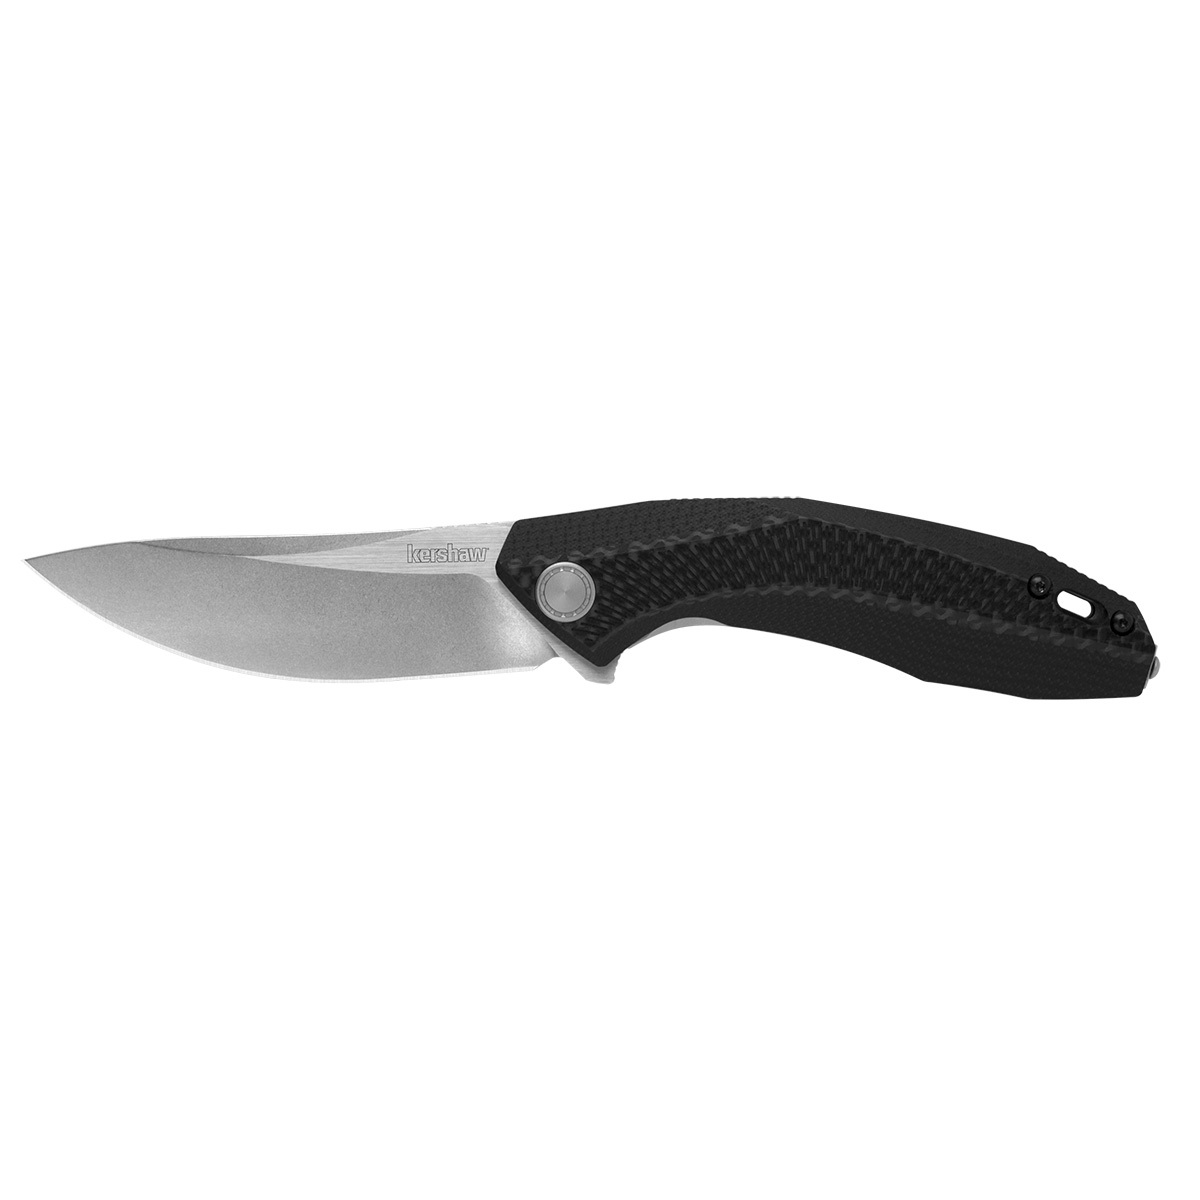 Складной нож Kershaw Tumbler K4038, сталь D2, рукоять G10/Carbon fiber набор victorinox swiss classic складной нож для овощей и разделочная доска красная рукоять